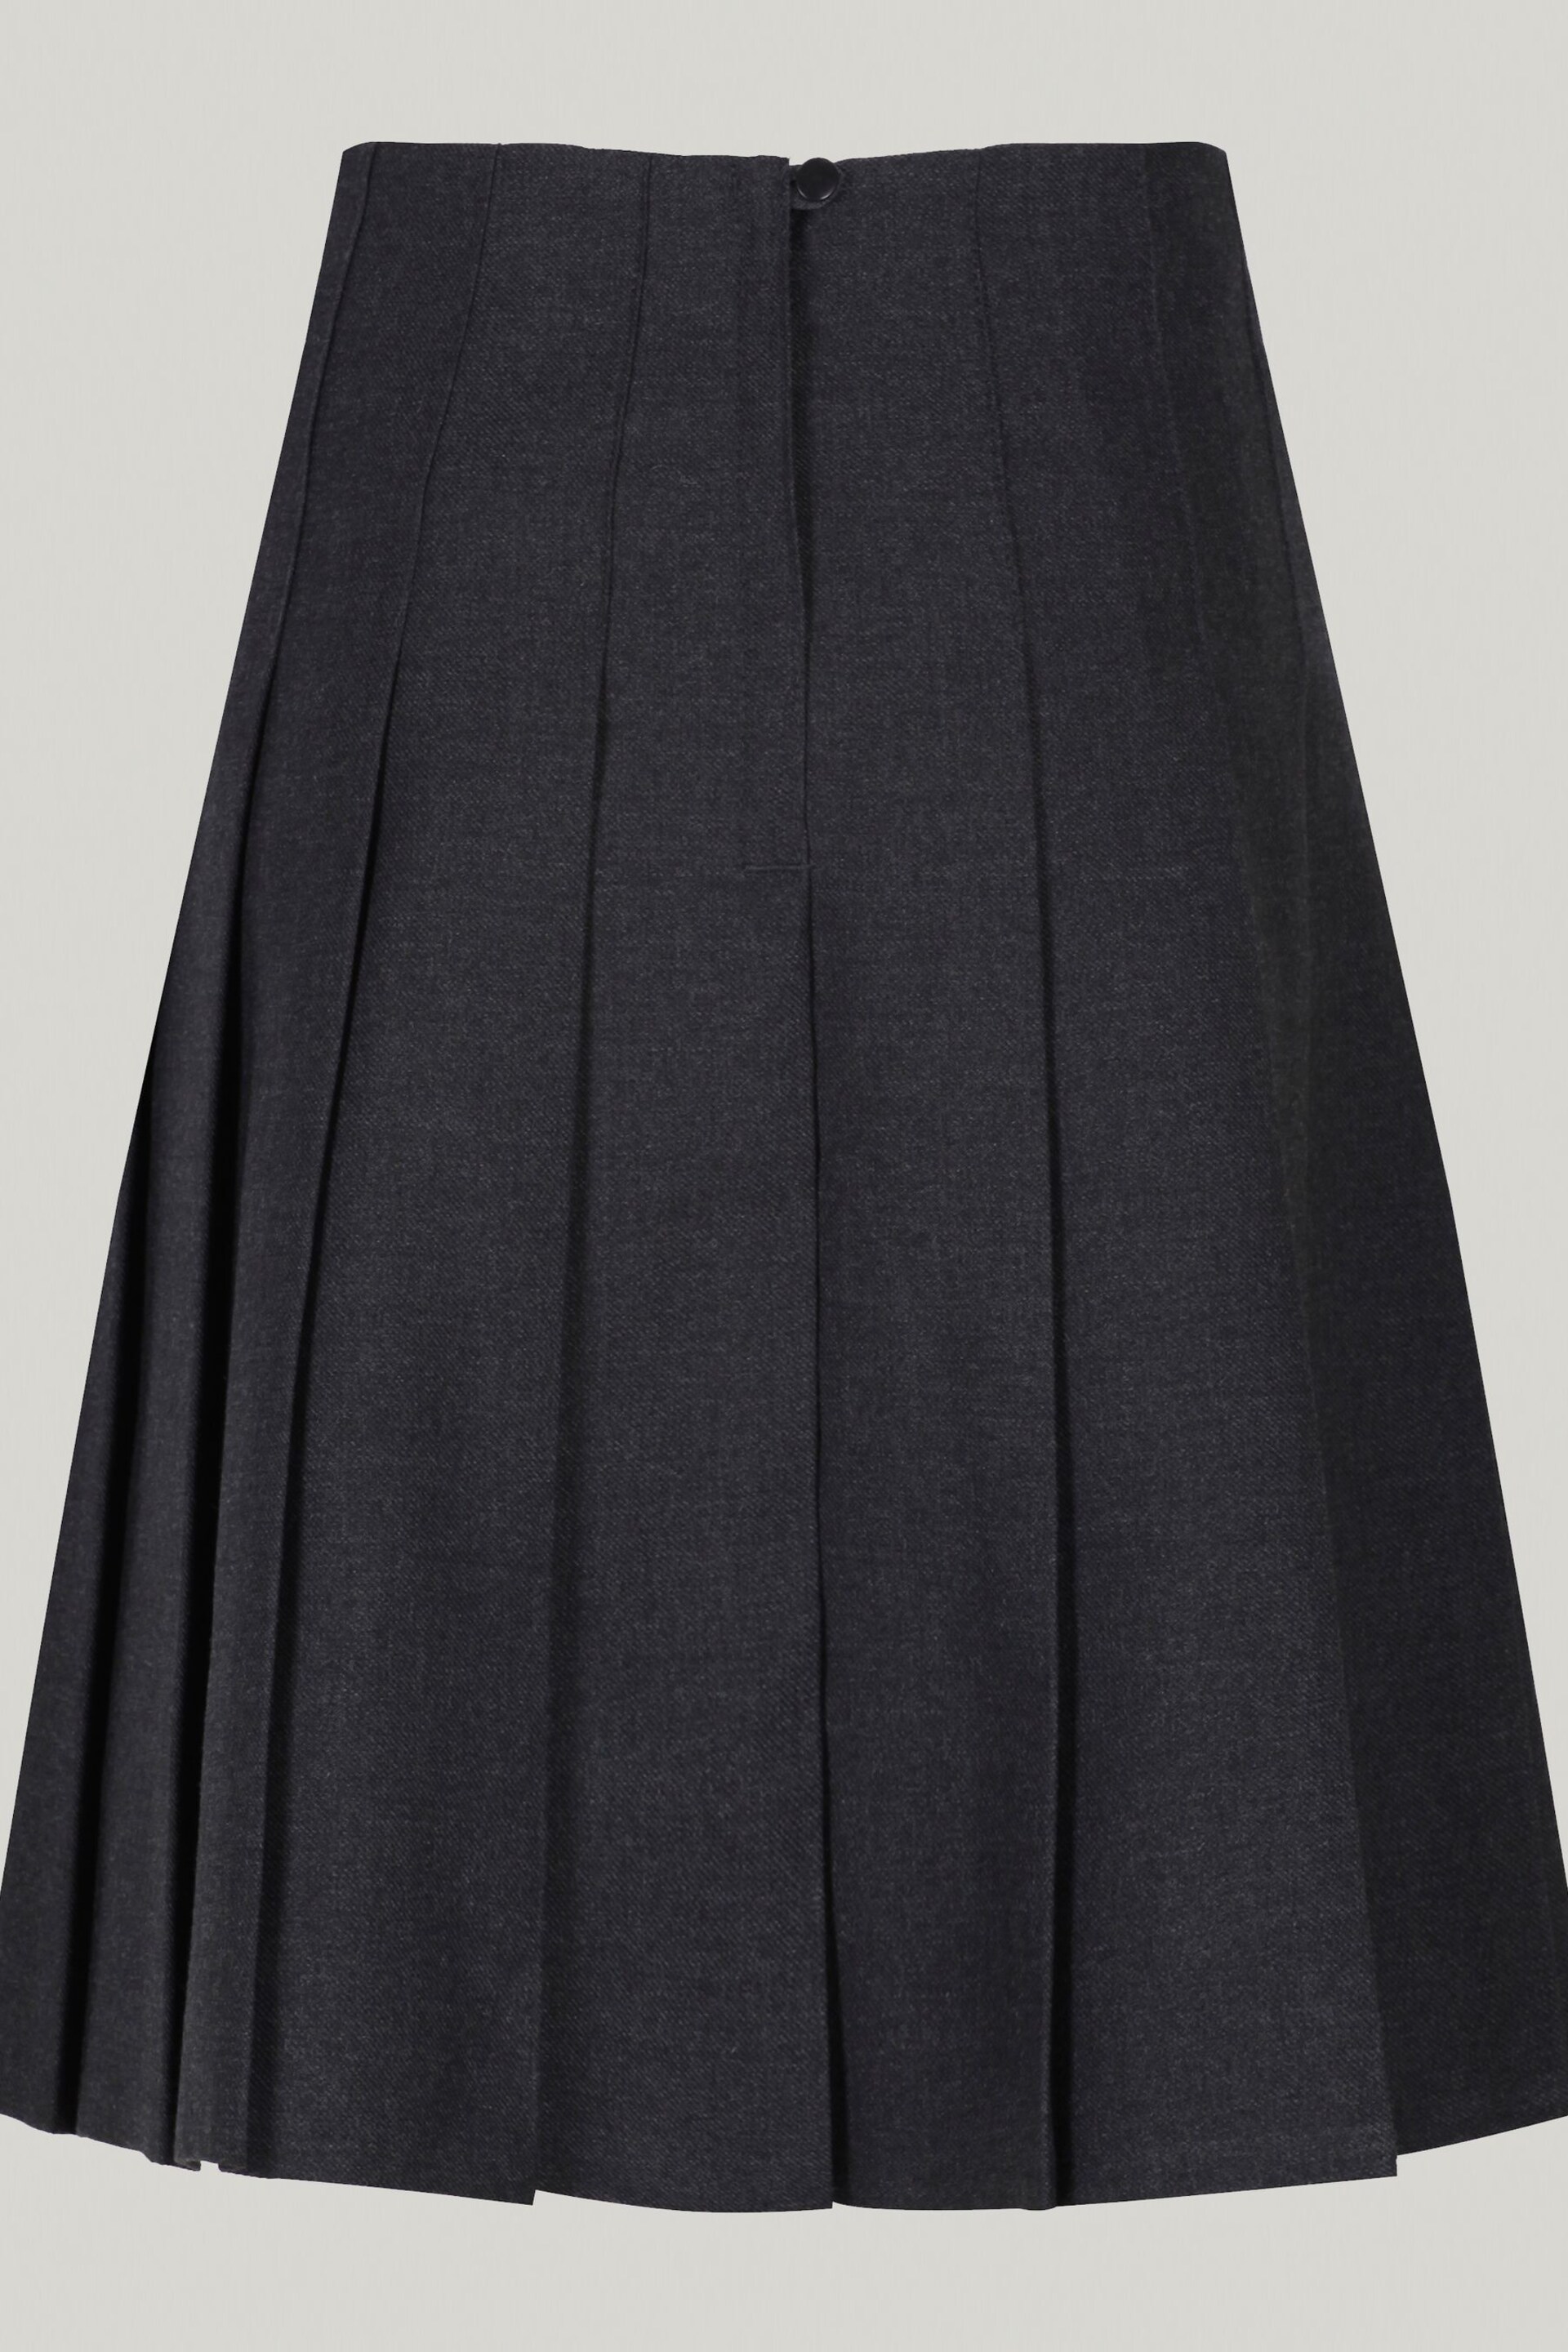 Trutex Grey 16" Stitch Down Permament Pleats School Skirt (10-16 Yrs) - Image 5 of 5